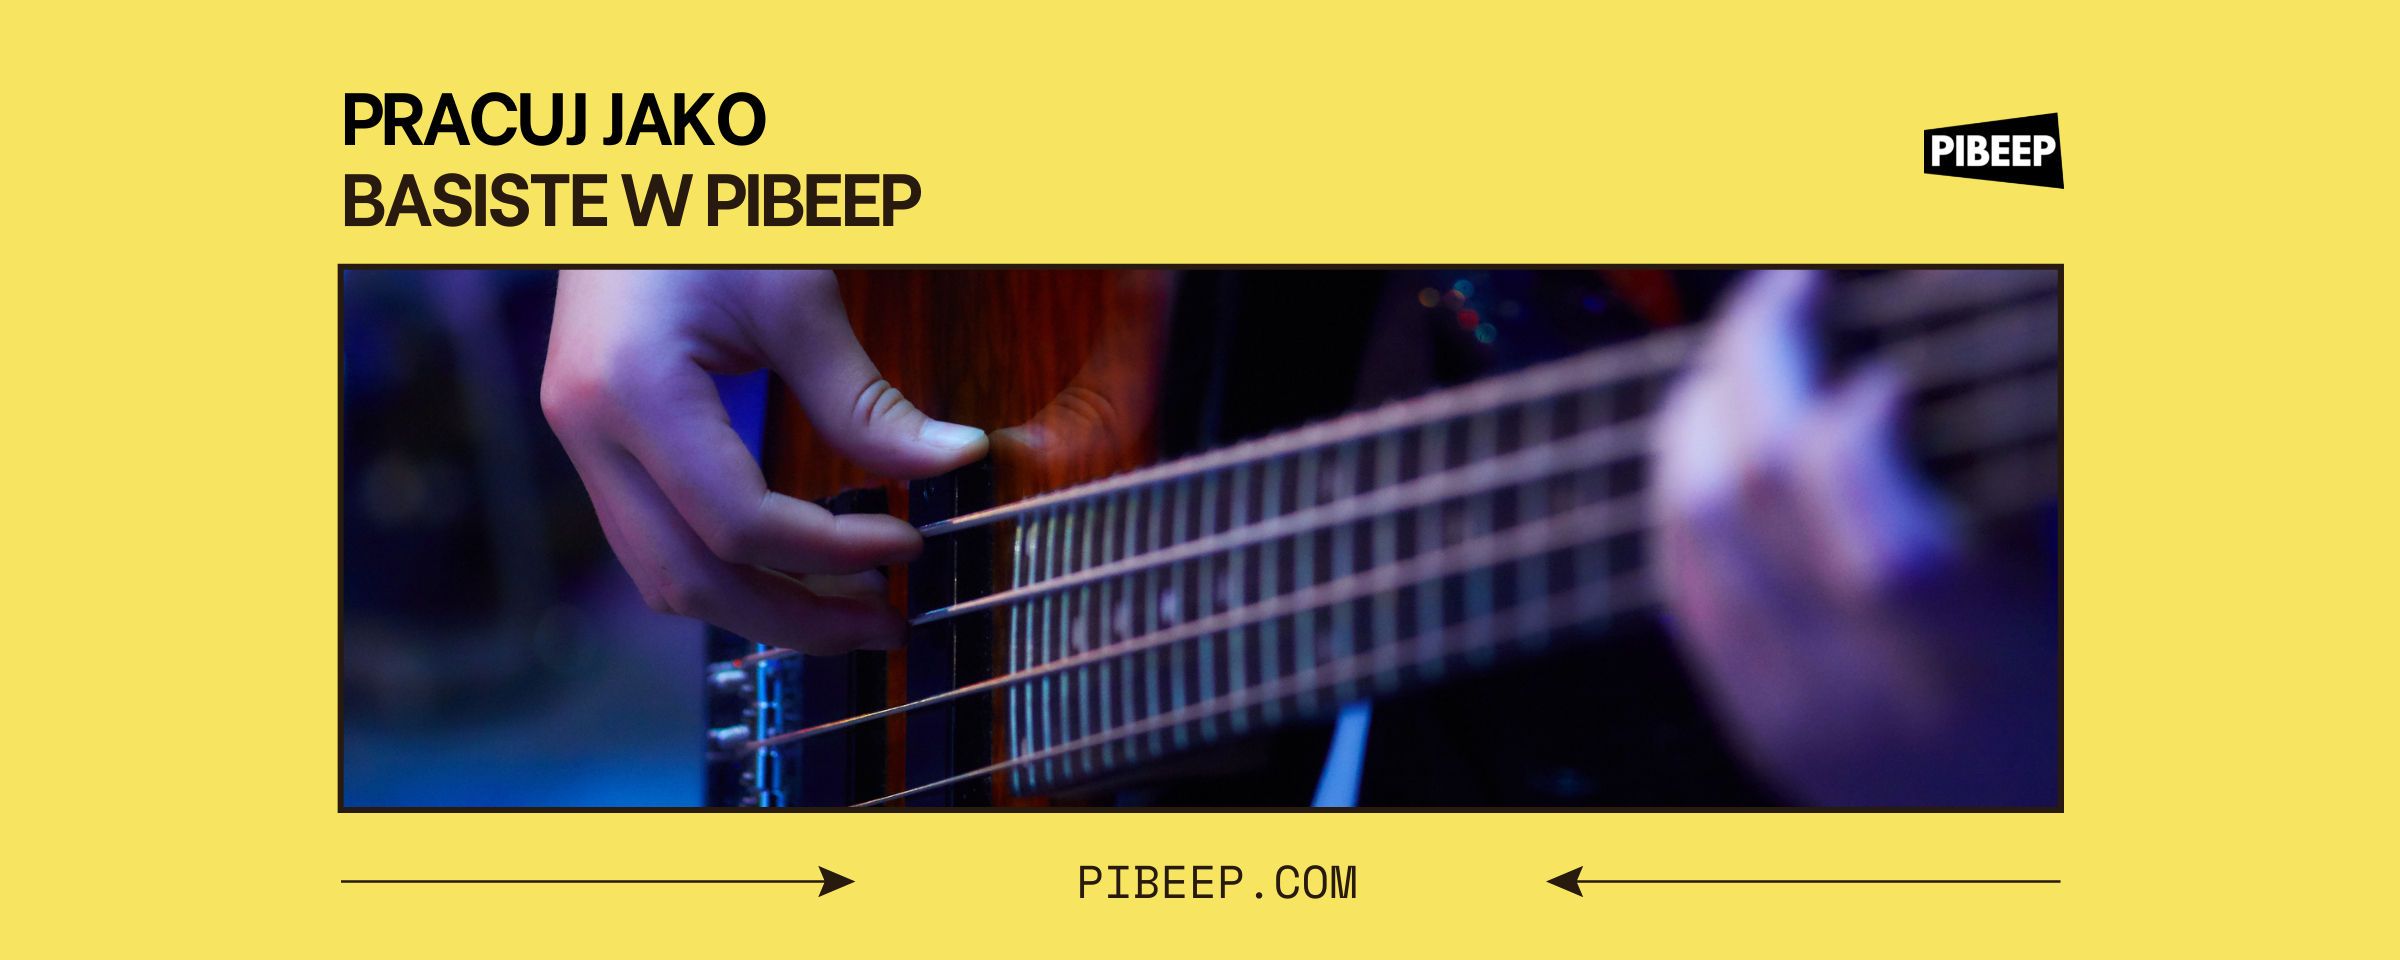 Usługi Marketplace na PIBEEP - Świat Otwartych Możliwości dla Basistów Platforma PIBEEP jest miejscem, które docenia i wykorzystuje różnorodność usług muzycznych, które może oferować basista. Niezależnie od tego, czy jesteś specjalistą od jazzu, rocka, popu czy muzyki klasycznej, na PIBEEP znajdziesz miejsce dla siebie. Jako basista, możesz oferować szeroki wachlarz usług. Możesz na przykład nagrać linię basową dla utworu, który jest w trakcie tworzenia. Możliwości są nieograniczone - od prostych linii basowych, idealnych dla popu i muzyki elektronicznej, po bardziej skomplikowane sekwencje, które mogą zadowolić nawet najbardziej wymagających miłośników jazzu czy progresywnego rocka. Kolejną usługą, którą możesz oferować, jest nagranie całej ścieżki basowej do utworu. To idealne rozwiązanie dla producentów muzycznych czy zespołów, którzy poszukują profesjonalnego basisty, ale nie mają możliwości angażowania go na stałe. Na koniec, możesz też oferować dogrywanie dodatków do już gotowych projektów. Czy masz na myśli solówkę na basie, efektowne przejście czy subtelne tło, twoje umiejętności na gitarze basowej mogą dodać utworowi nowego wymiaru i oryginalności. Marketplace na PIBEEP to miejsce, które daje ci szansę na zarabianie, rozwijanie swoich umiejętności i dzielenie się nimi z innymi. Jako basista, nie jesteś ograniczony tylko do grania na koncertach czy w studiu. Teraz, dzięki PIBEEP, możesz dotrzeć do szerszego grona odbiorców i potencjalnych klientów. Rodzaje Kont dla Basistów na PIBEEP - Wybierz Swoją Ścieżkę Platforma PIBEEP rozumie potrzeby i cele basistów. Dlatego oferuje dwa rodzaje kont: Artysta i Artysta Pro, każde z nich zaprojektowane z myślą o specyficznych wymaganiach i oczekiwaniach basistów. Konto Artysta jest idealnym wyborem dla basistów, którzy dopiero zaczynają swoją przygodę z zarabianiem na graniu na basie. Daje ci dostęp do podstawowych funkcji platformy, takich jak możliwość tworzenia i sprzedaży usług muzycznych, dostęp do społeczności PIBEEP i możliwość nawiązywania kontaktów z innymi artystami. Co więcej, konto Artysta jest darmowe, co oznacza, że możesz zacząć zarabiać na swoich umiejętnościach gry na basie bez żadnych początkowych kosztów. Konto Artysta Pro, z drugiej strony, jest skierowane do bardziej doświadczonych basistów, którzy chcą w pełni wykorzystać potencjał platformy PIBEEP. Oferuje wszystkie funkcje konta Artysta, ale dodatkowo daje dostęp do szeregu zaawansowanych narzędzi i funkcji, takich jak zarządzania firmą lub grupą współpracowników.